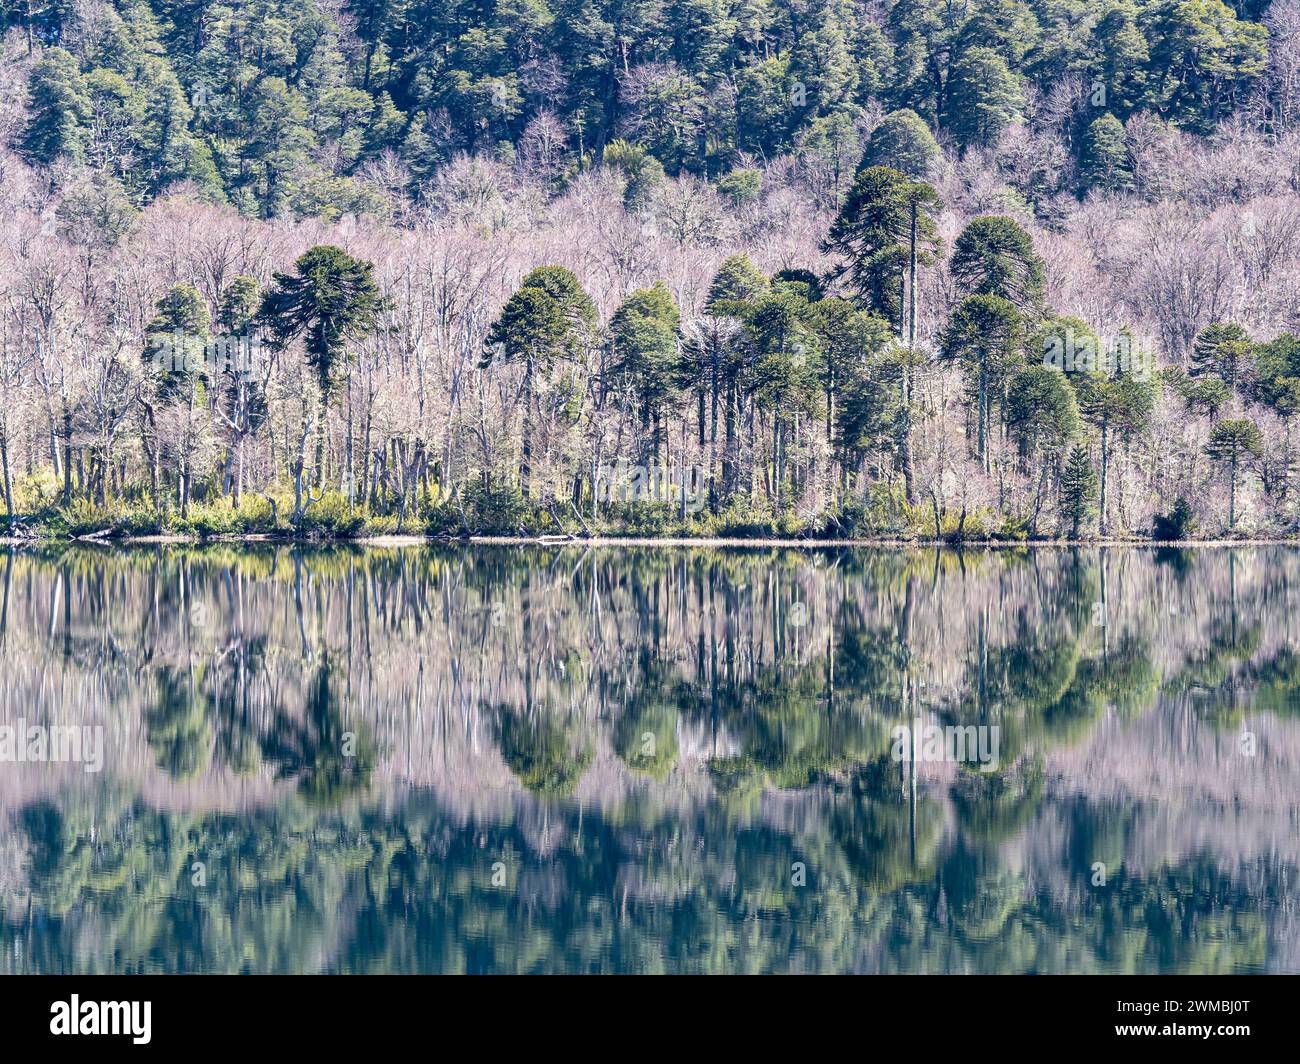 Lago Quilleihue, ruhige Oberfläche, Reflexionen auf dem Wasser, araukaria Bäume, Villarica NP bei Paso Tromen Ó Mamuil Malal, Chile Stockfoto